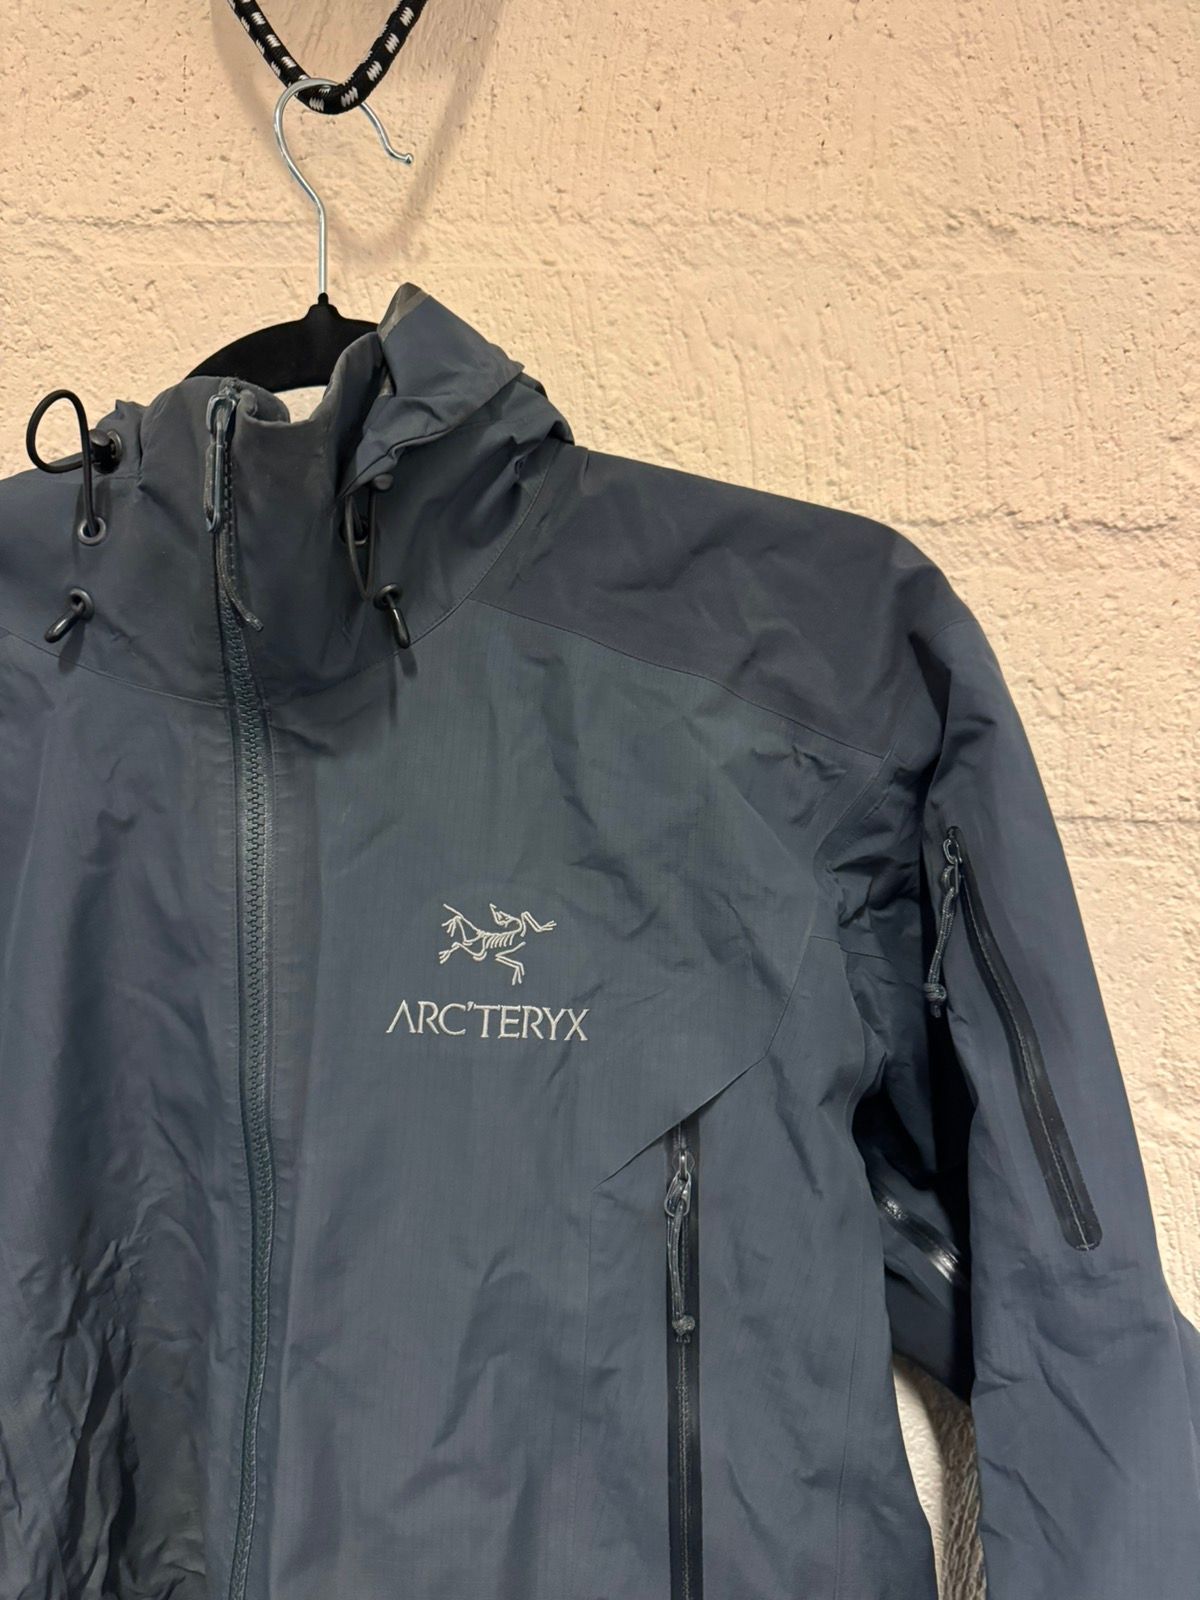 Arc'Teryx Arcteryx Beta AR gore Tex Pro Jacket y2k Gorpcore | Grailed